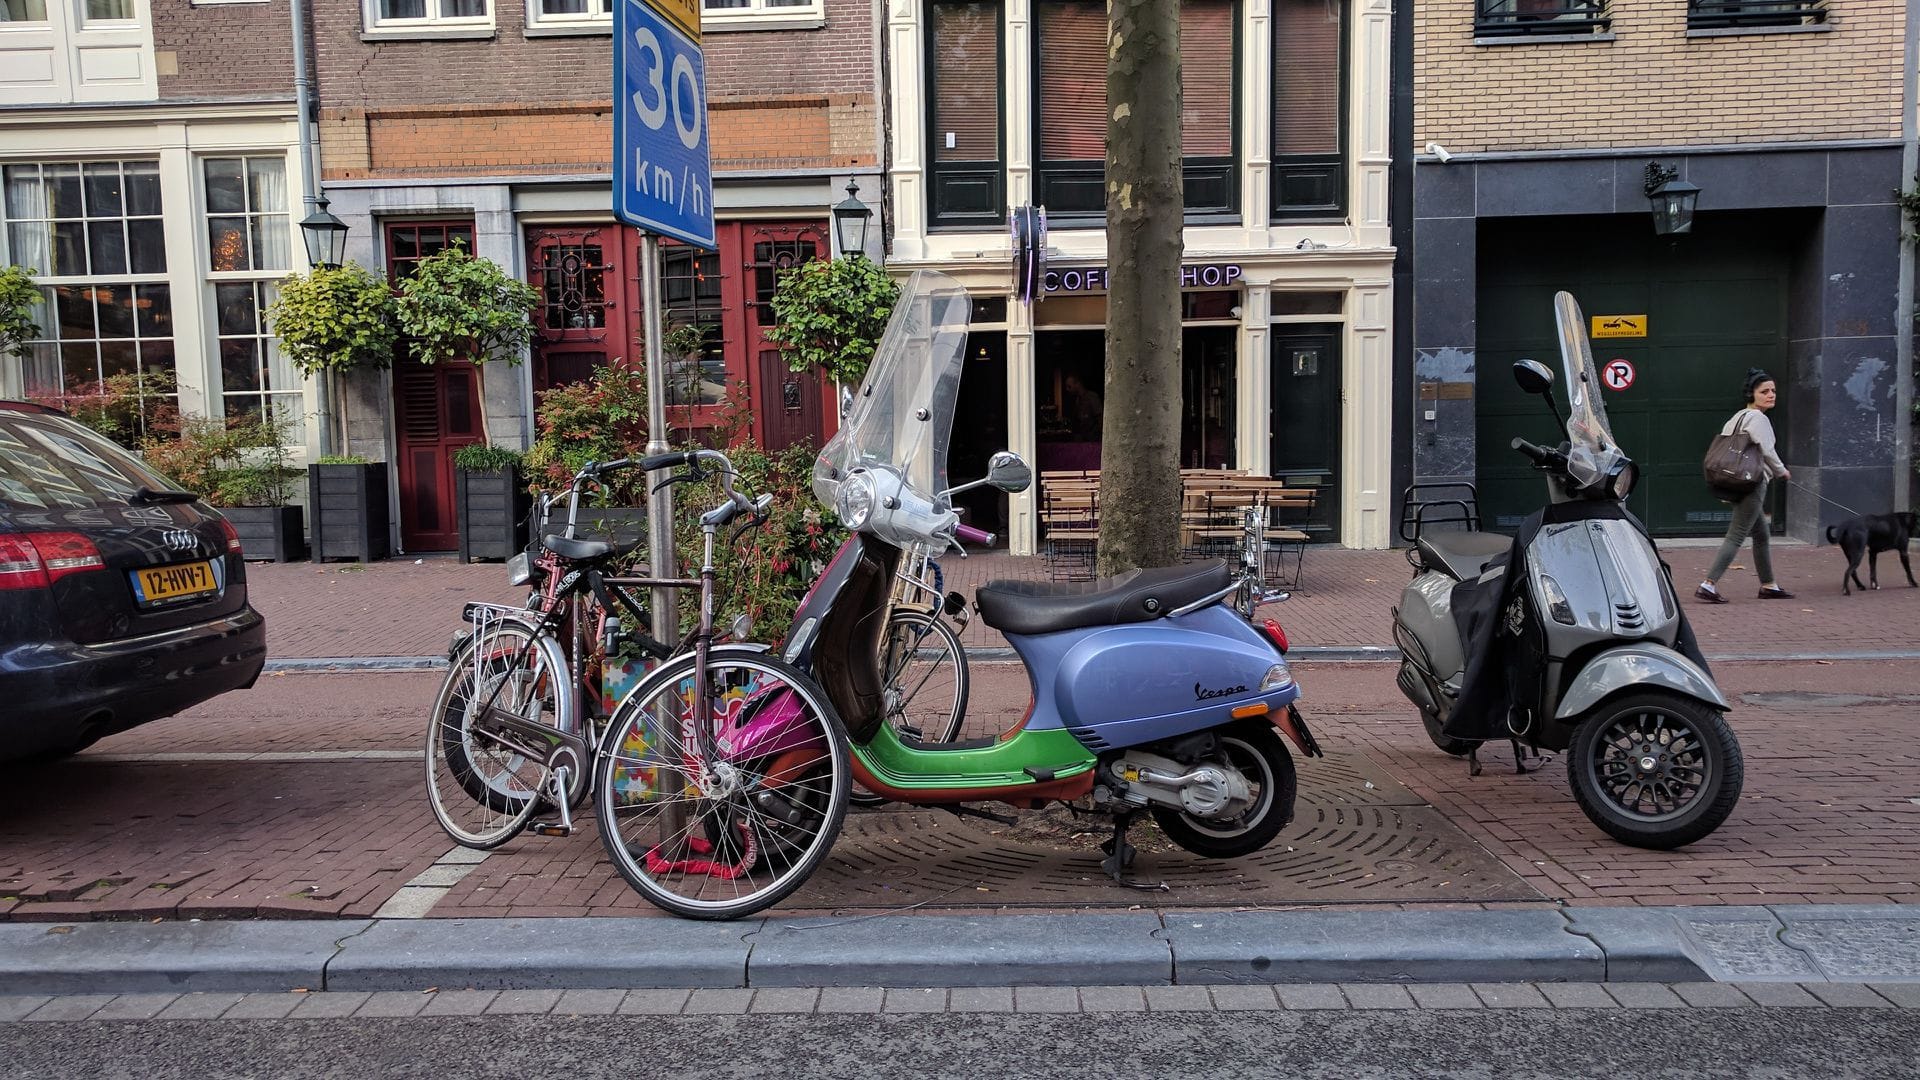 荷兰人们喜爱的Moped--Vespa